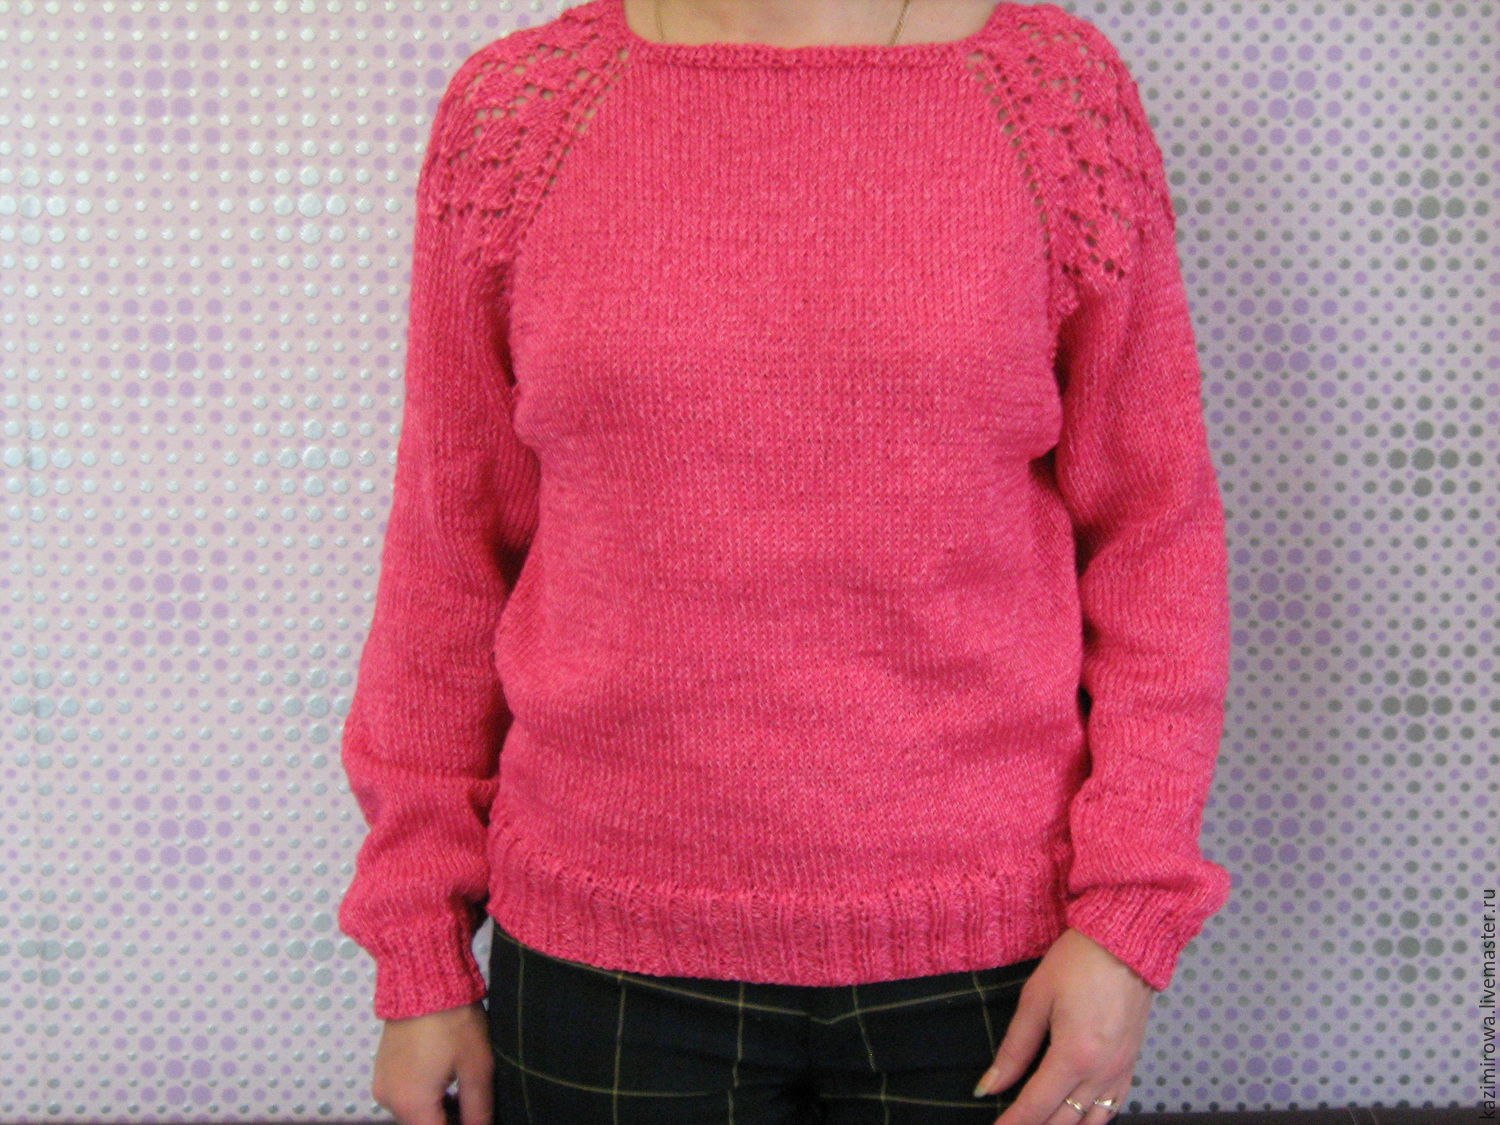 Песни розовый свитер. Красно розовый джемпер. Свитер фото. Розовый свитер с молнией простуда. Розовый свитер женский фото без человека.